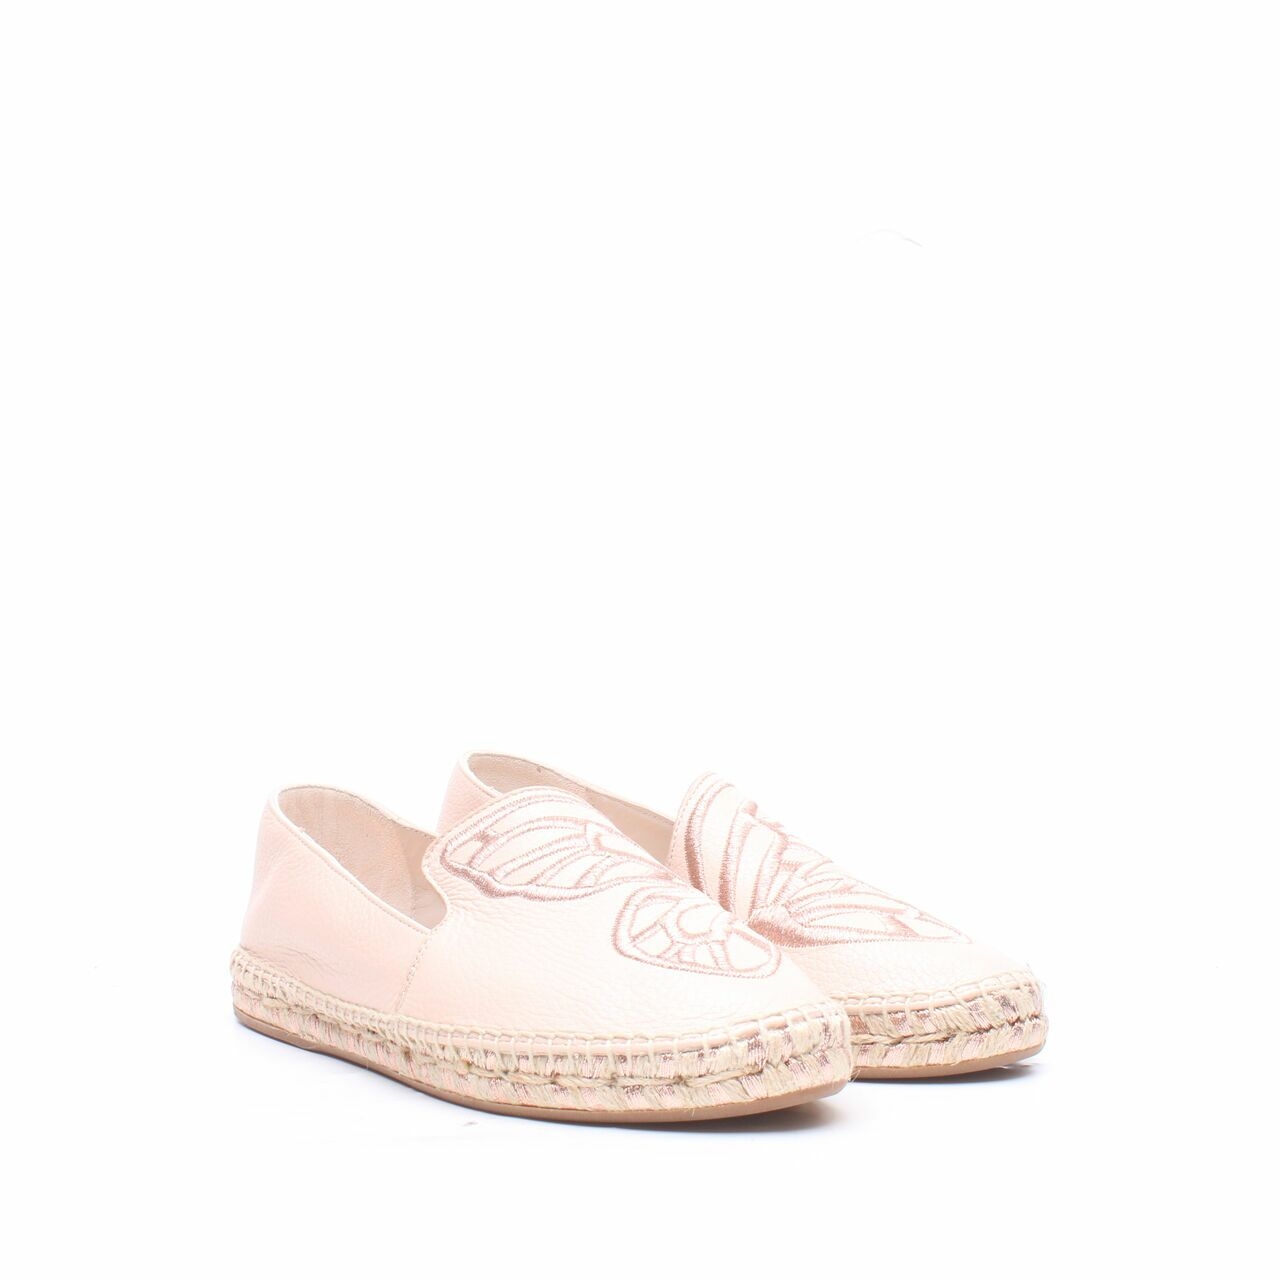 Sophia Webster Pink Flats Shoes